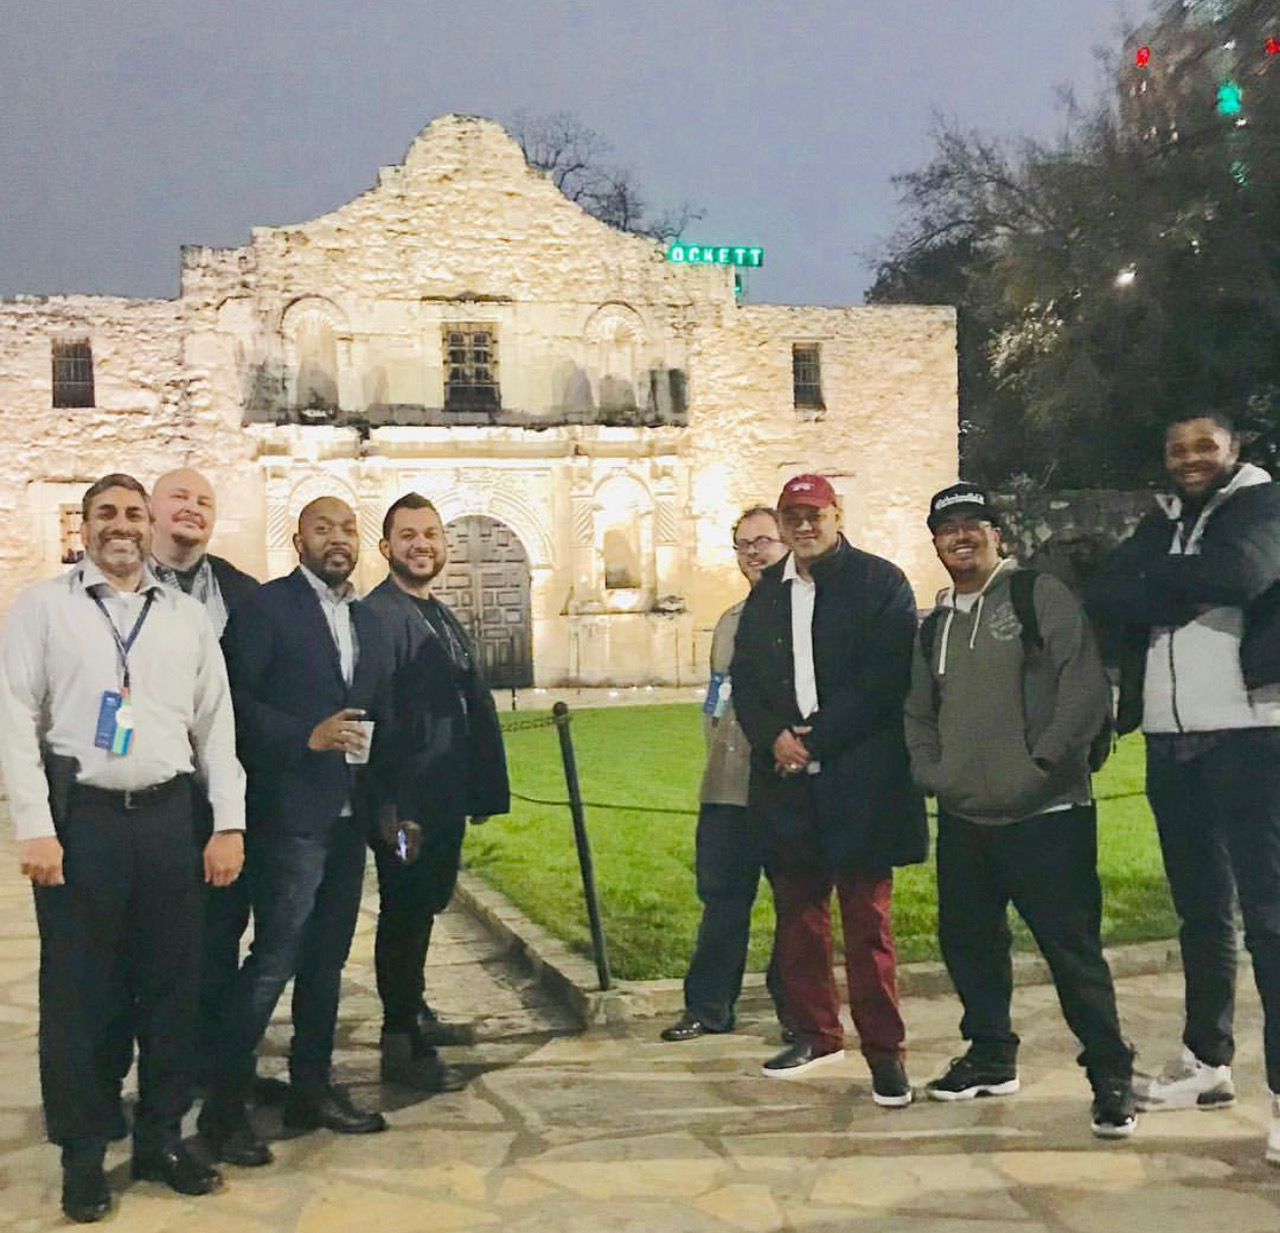 A Few Good Dad’s at the Alamo